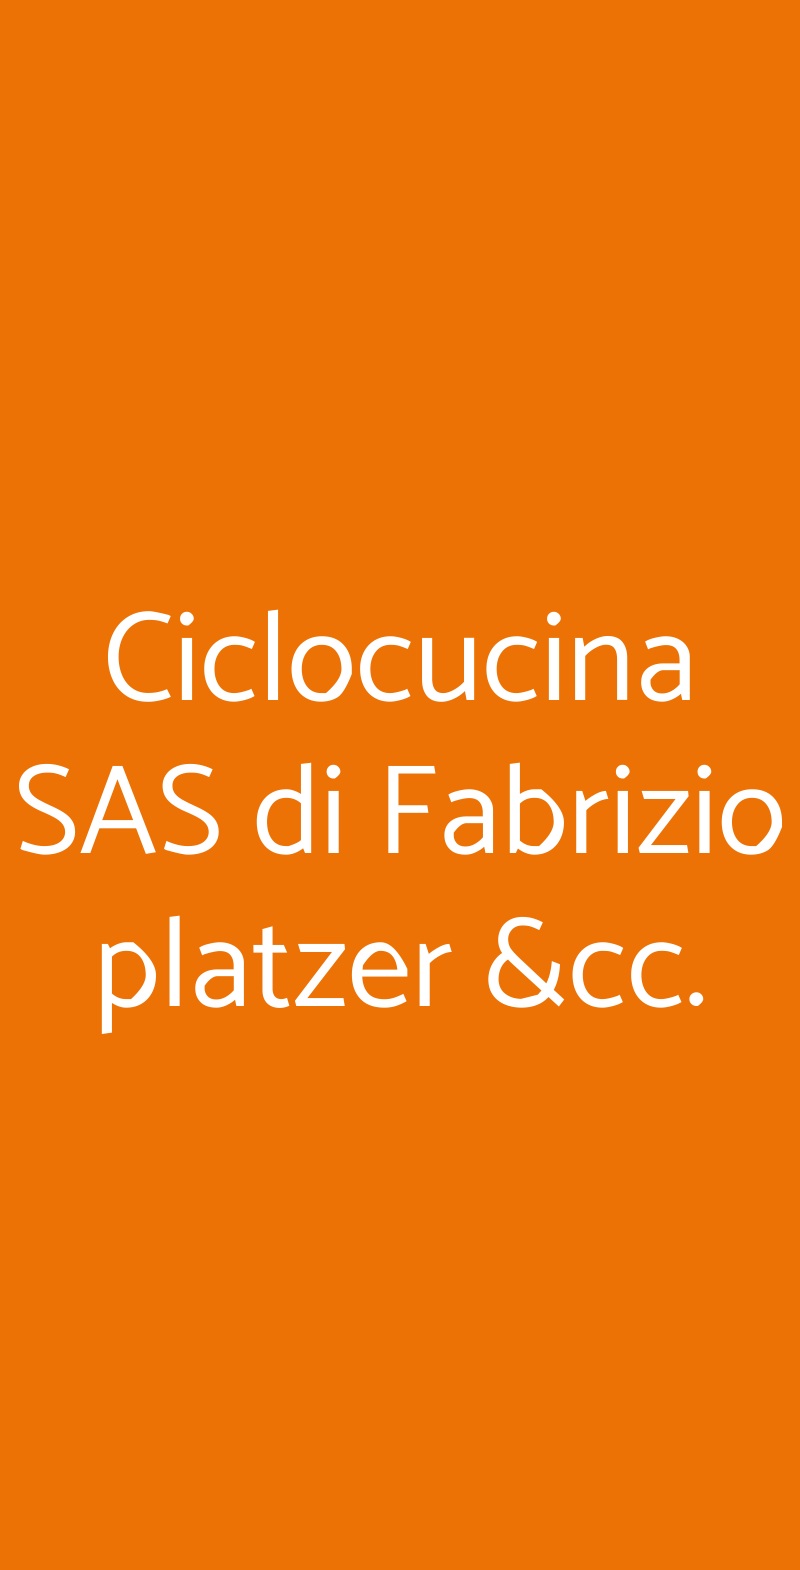 Ciclocucina SAS di Fabrizio platzer &cc. Torino menù 1 pagina